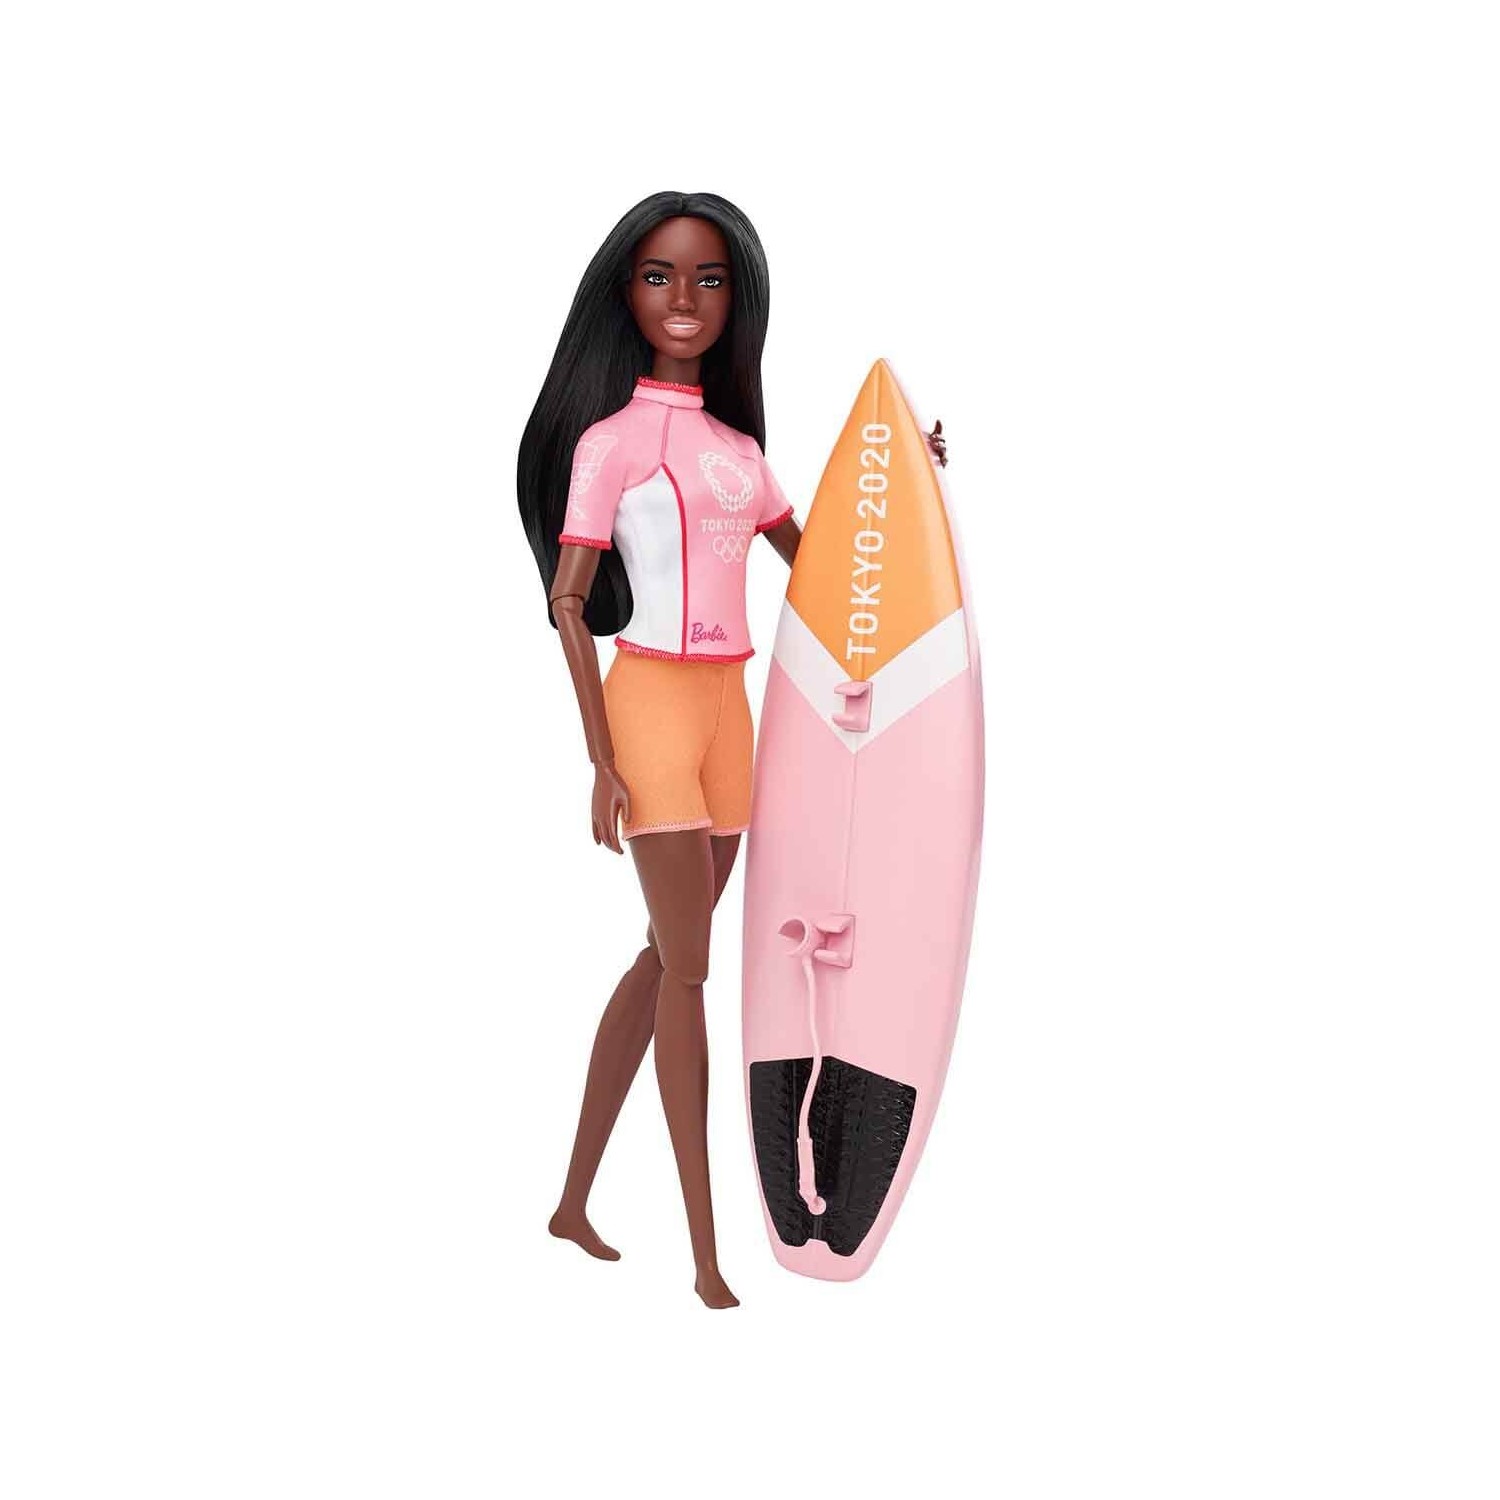 Кукла Barbie на серфинге GJL73 кукла barbie олимпийская спортсменка gjl73 софтбол